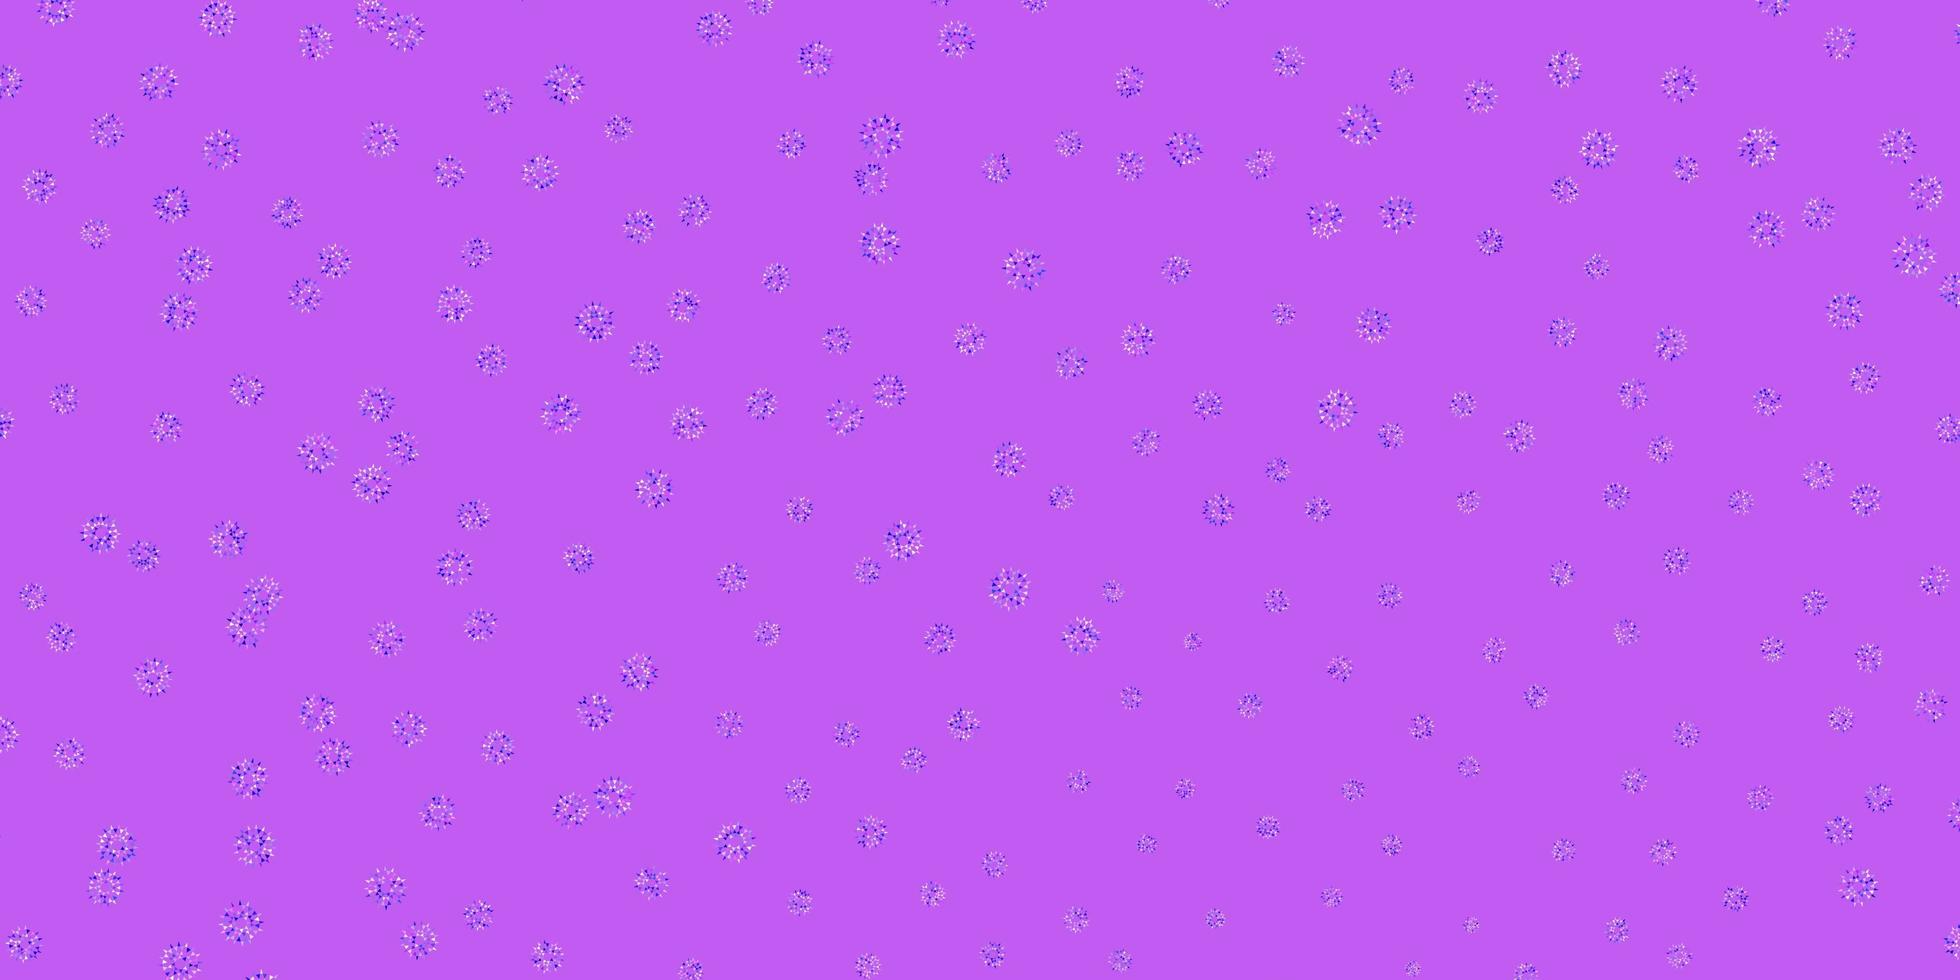 sfondo doodle vettoriale rosa chiaro, blu con fiori.